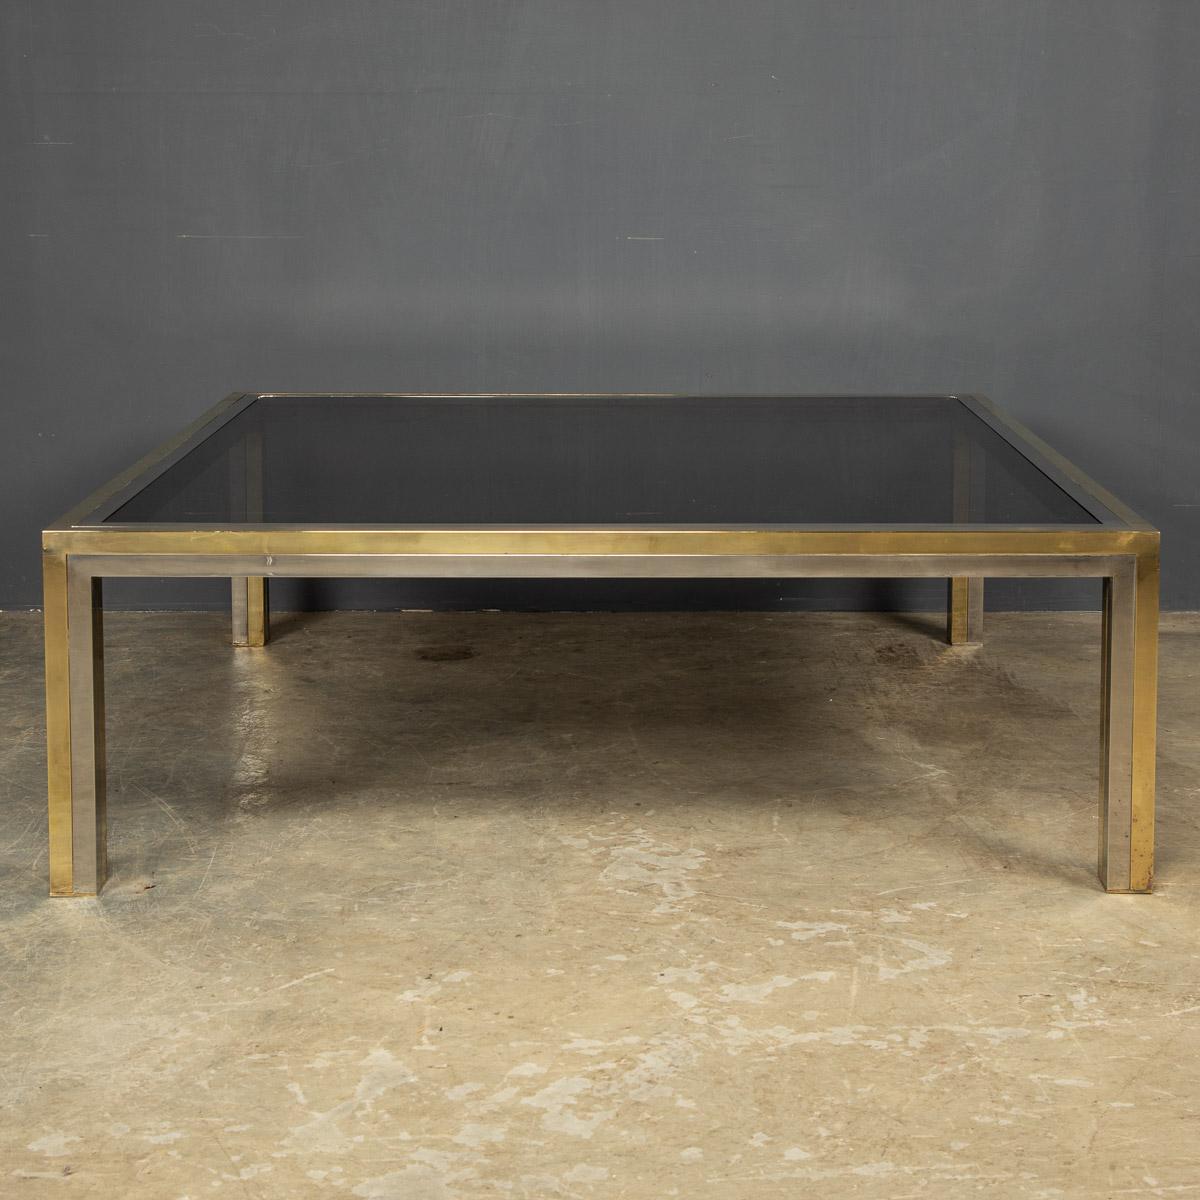 Grande table basse carrée en laiton et chrome de fabrication italienne du 20e siècle, avec son plateau d'origine en verre fumé. Attribué à Romeo Rega, fabriqué vers les années 1970.

CONDITION
En excellent état - veuillez vous référer aux